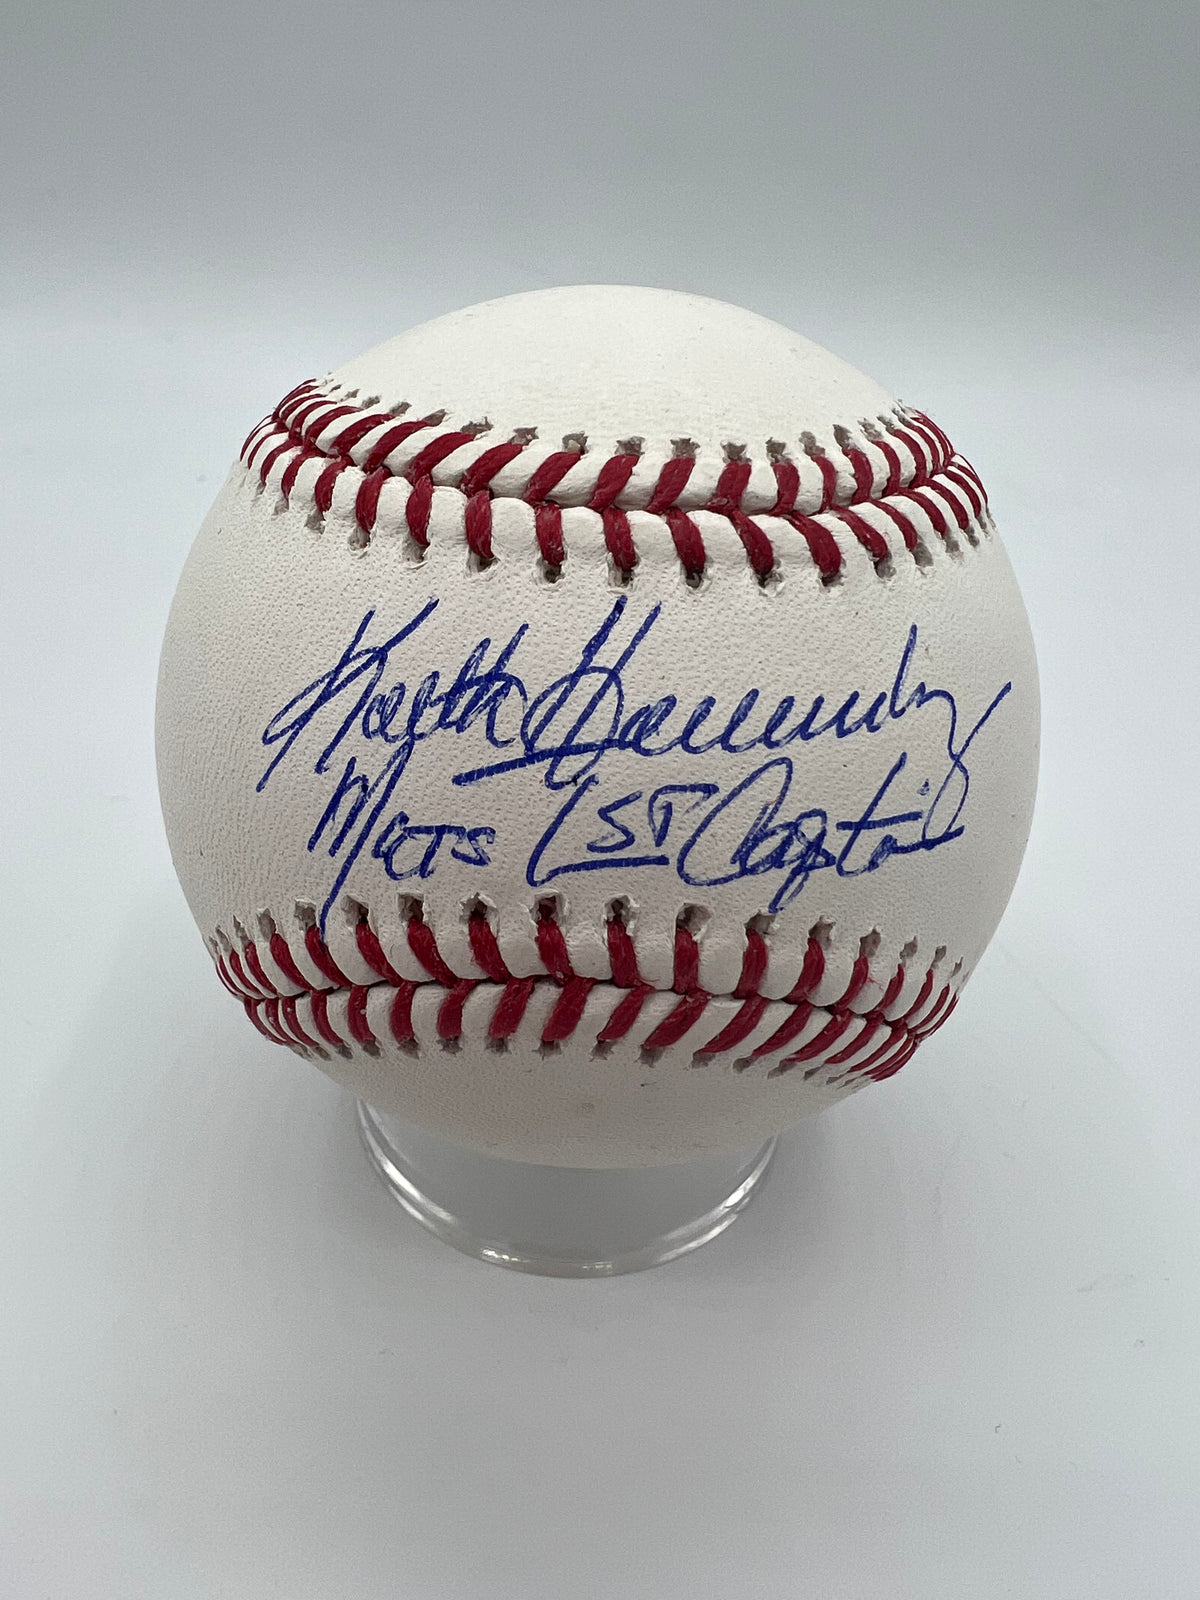 Keith Hernandez autographed Jersey (New York Mets 1986